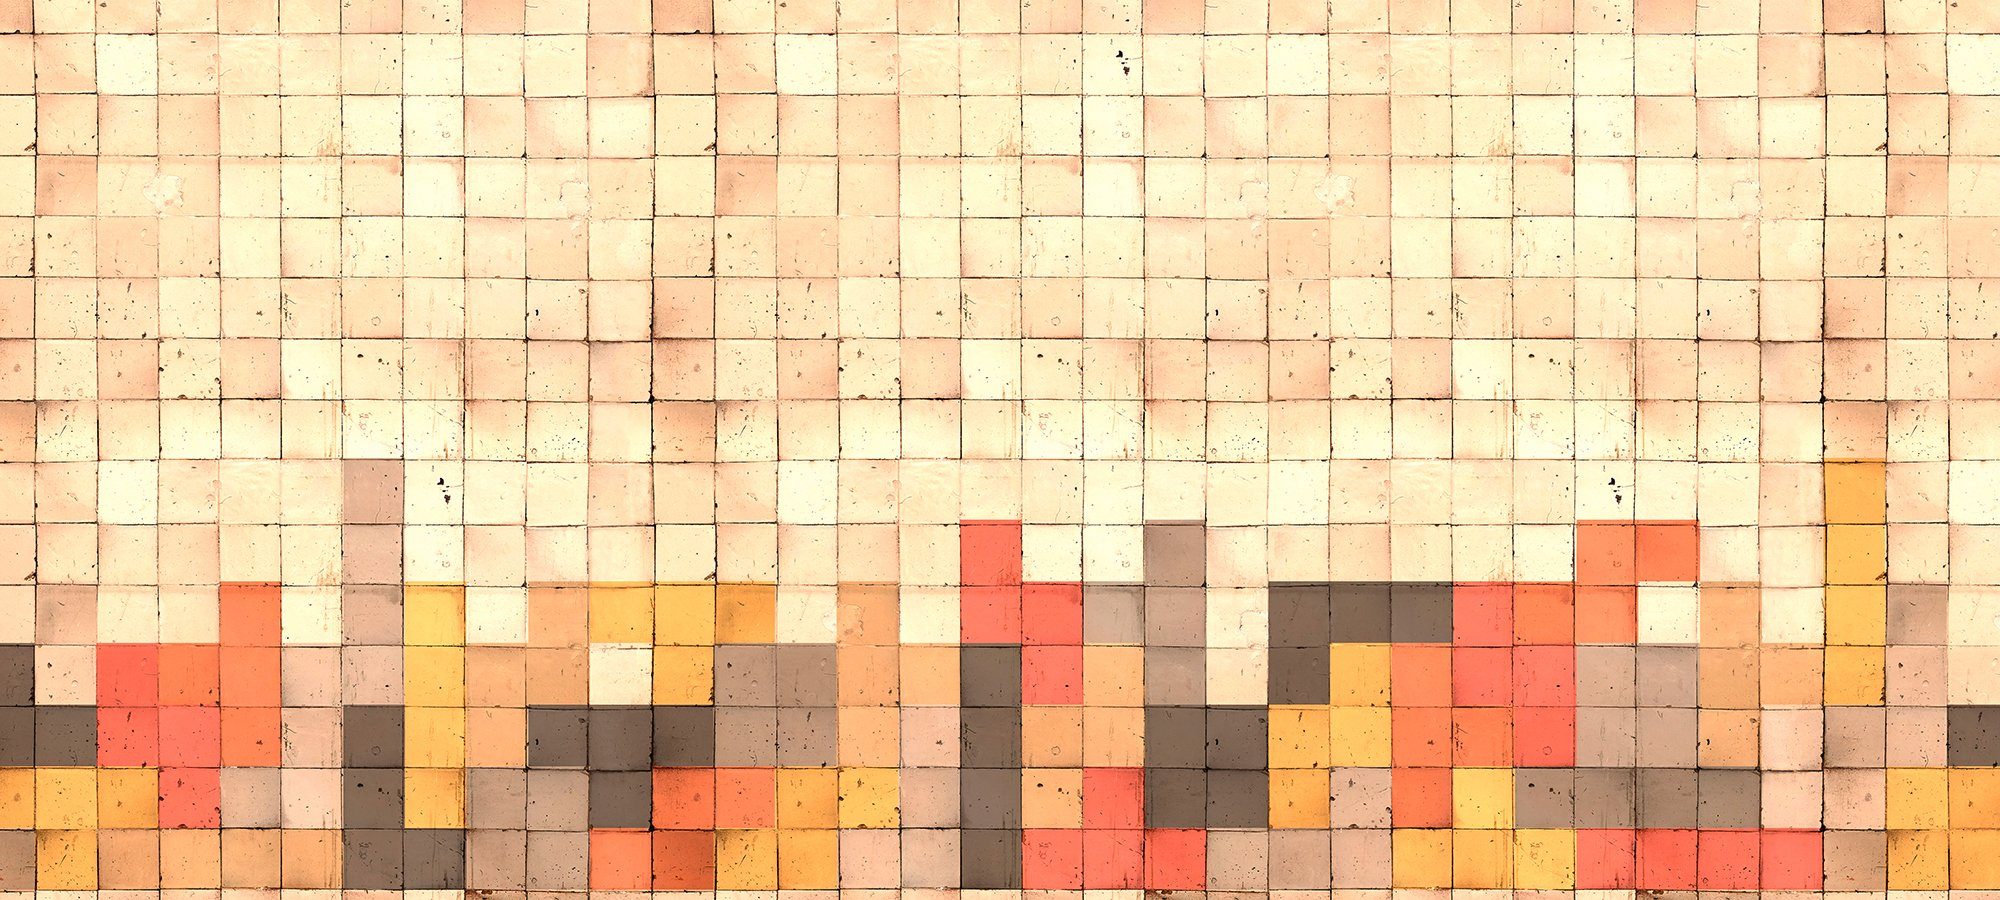 St), Tetris Schräge, Architects 2, Wand, Vlies, 47 glatt, Atelier Paper Mosaic geometrisch, Fototapete (6 Decke rot/ocker/beige